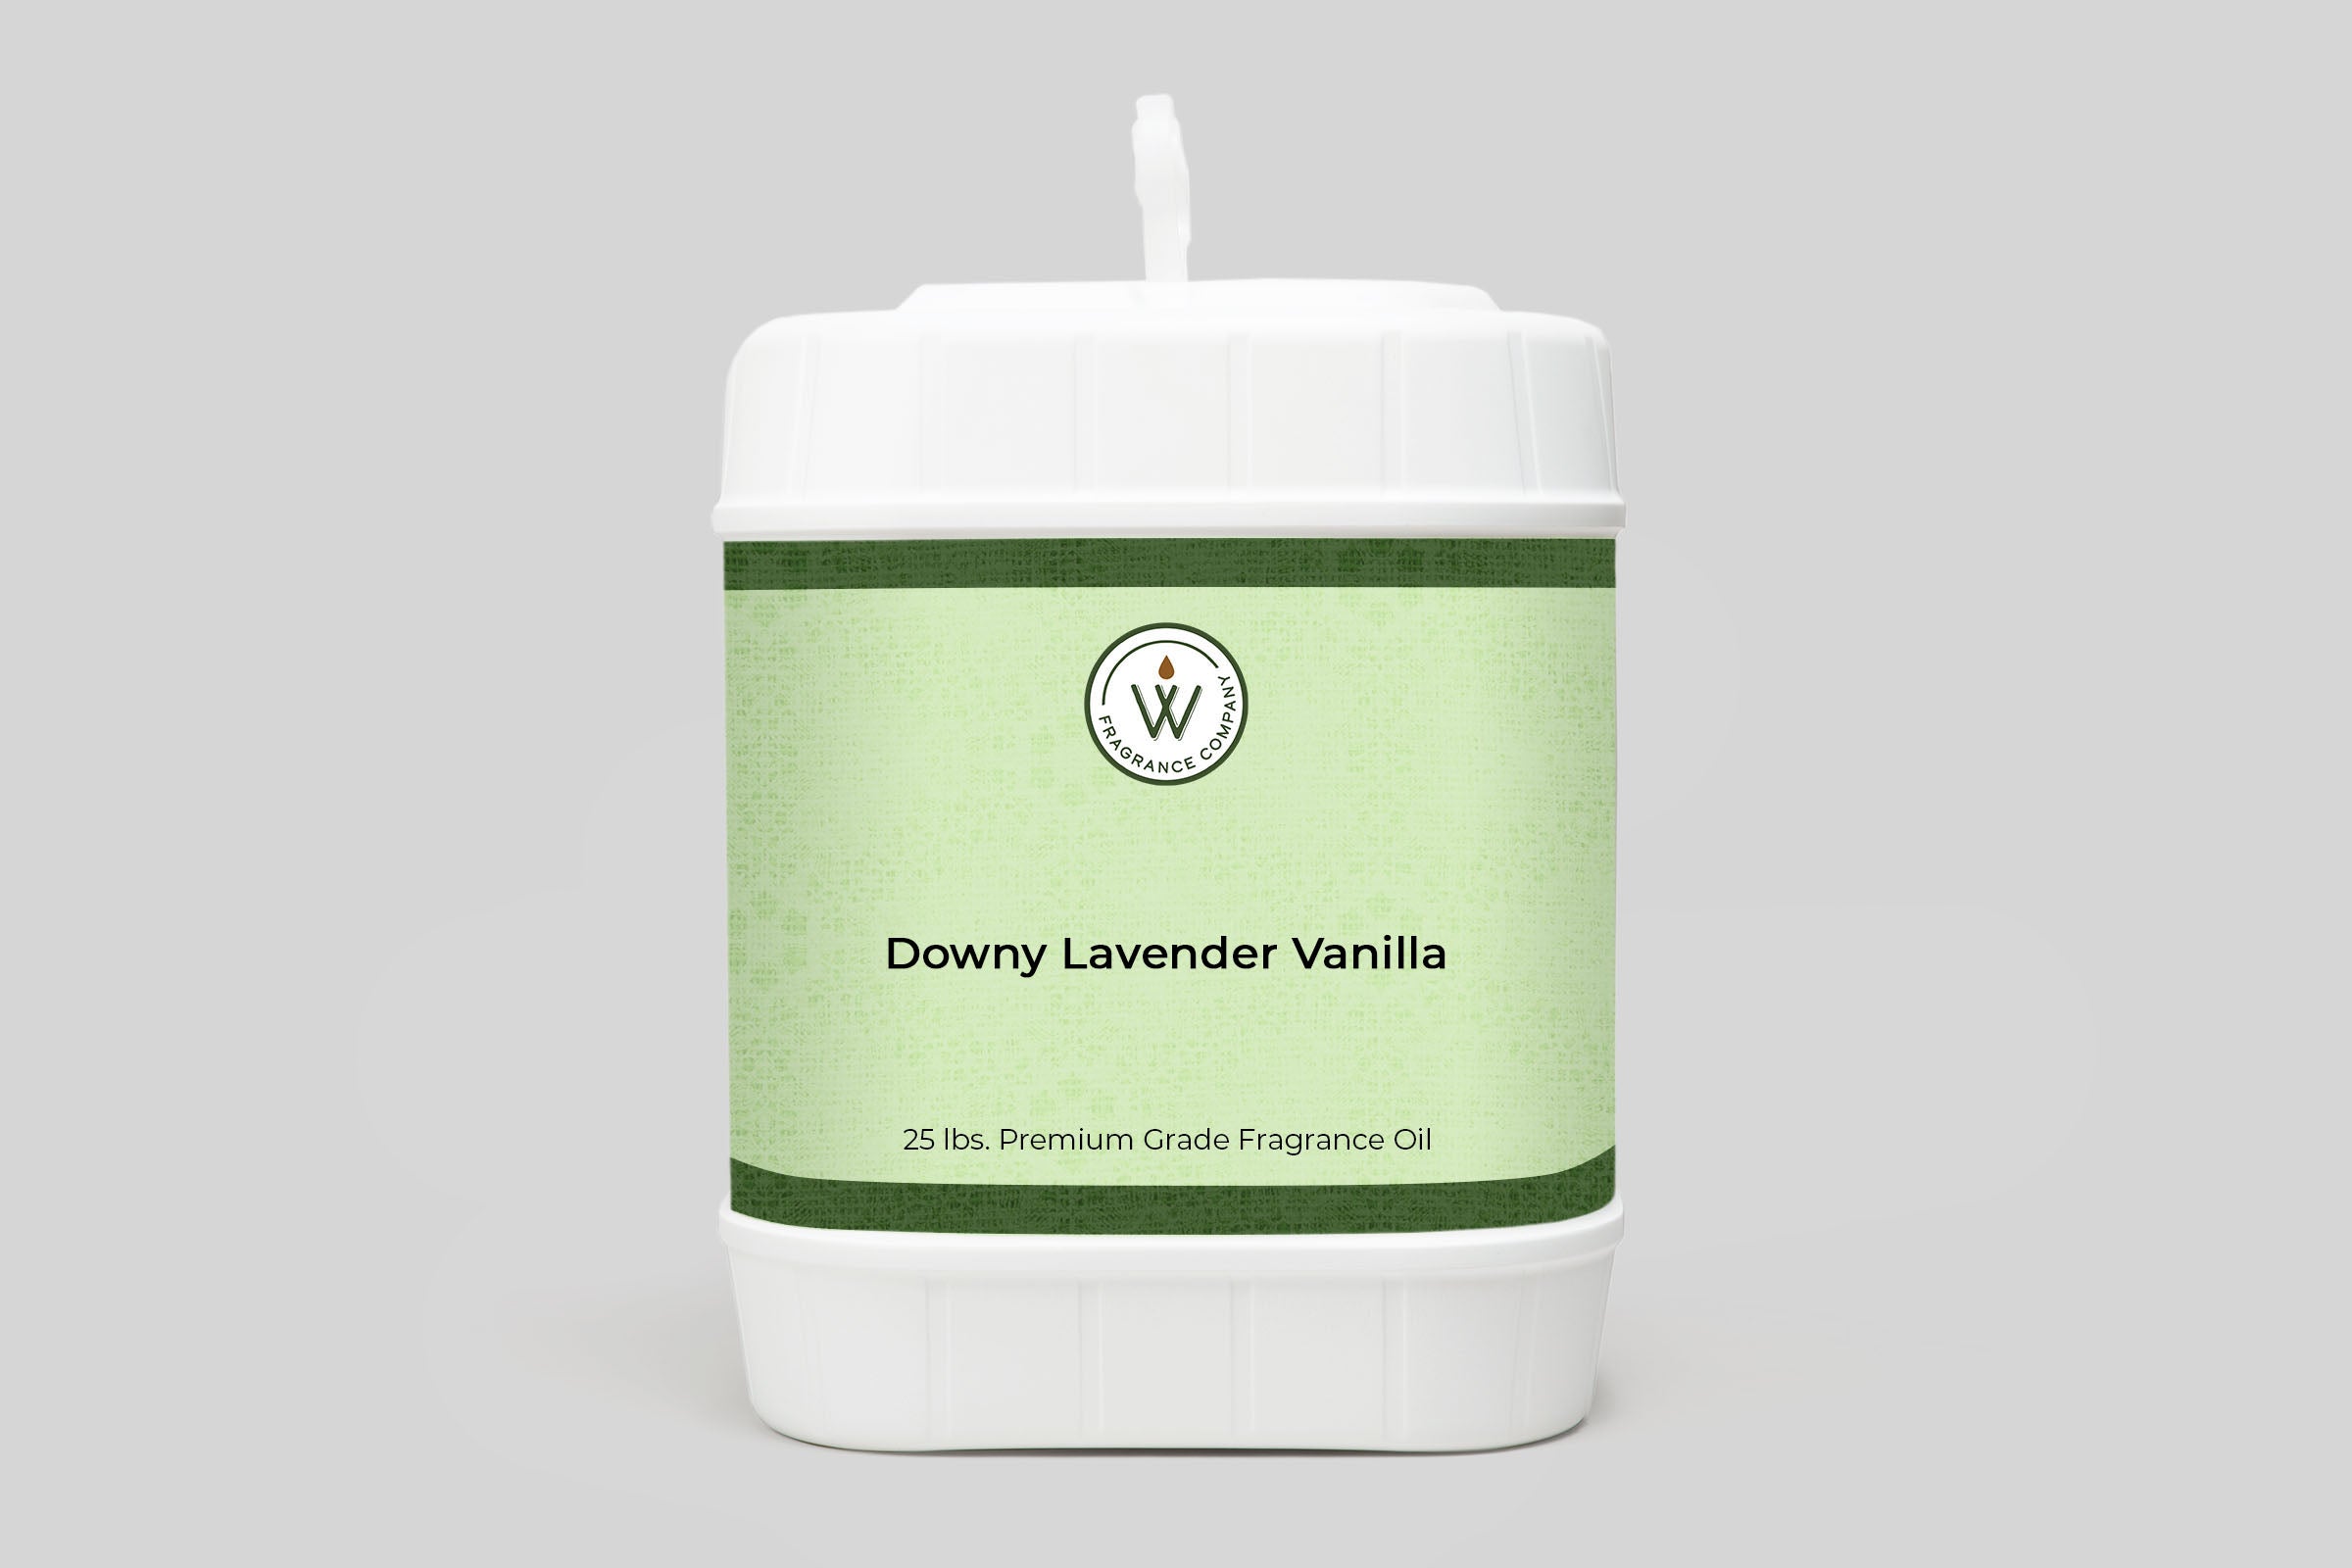 Downy Lavender Vanilla Fragrance Oil